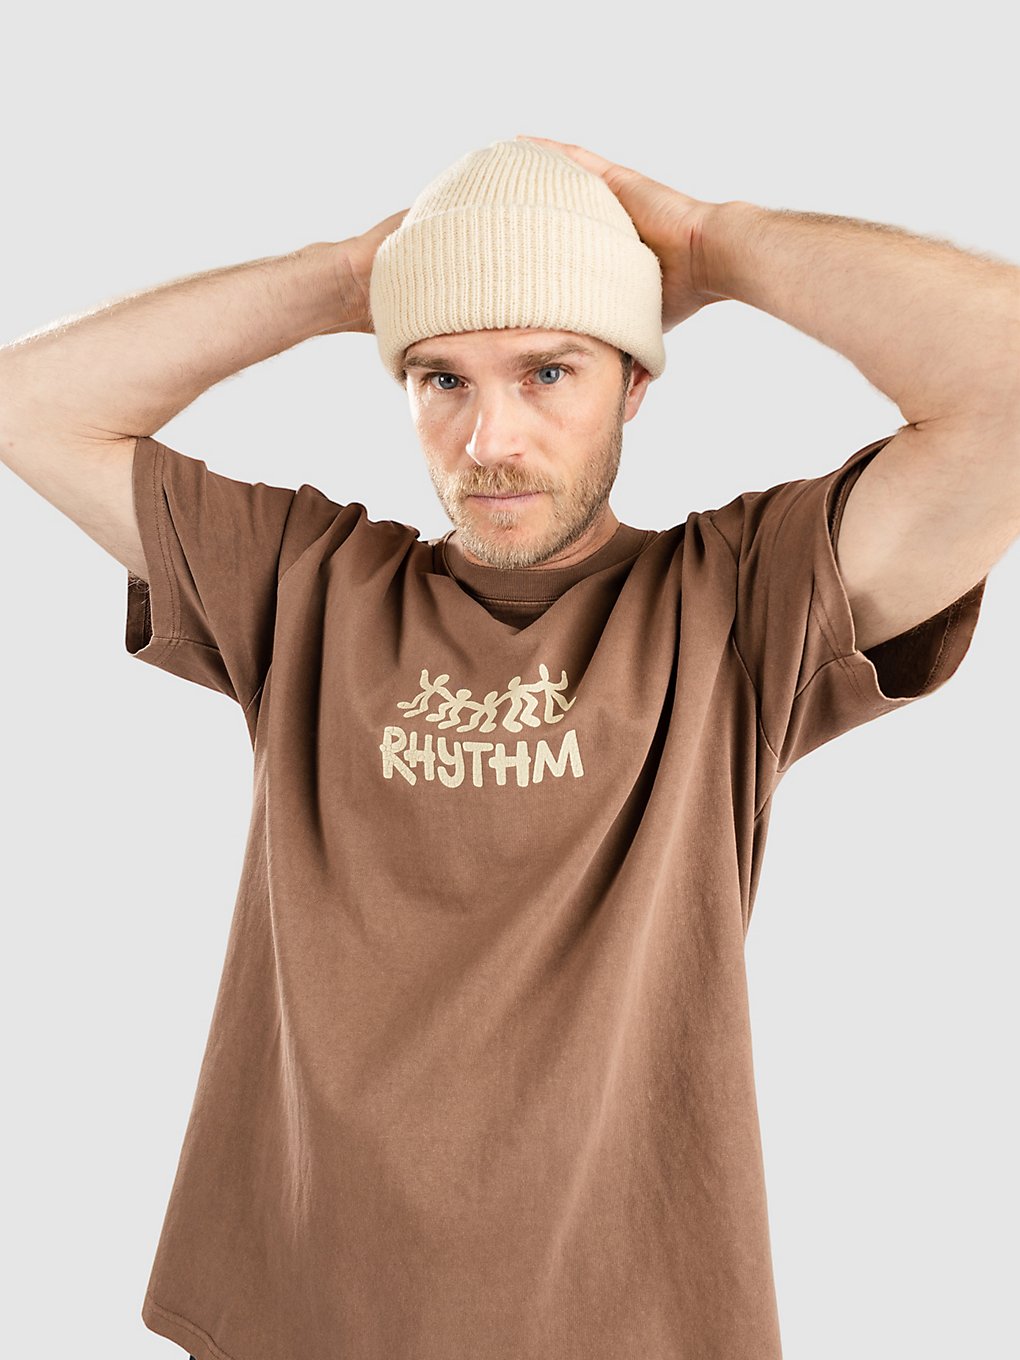 Rhythm 20 Year Vintage T-Shirt brown kaufen